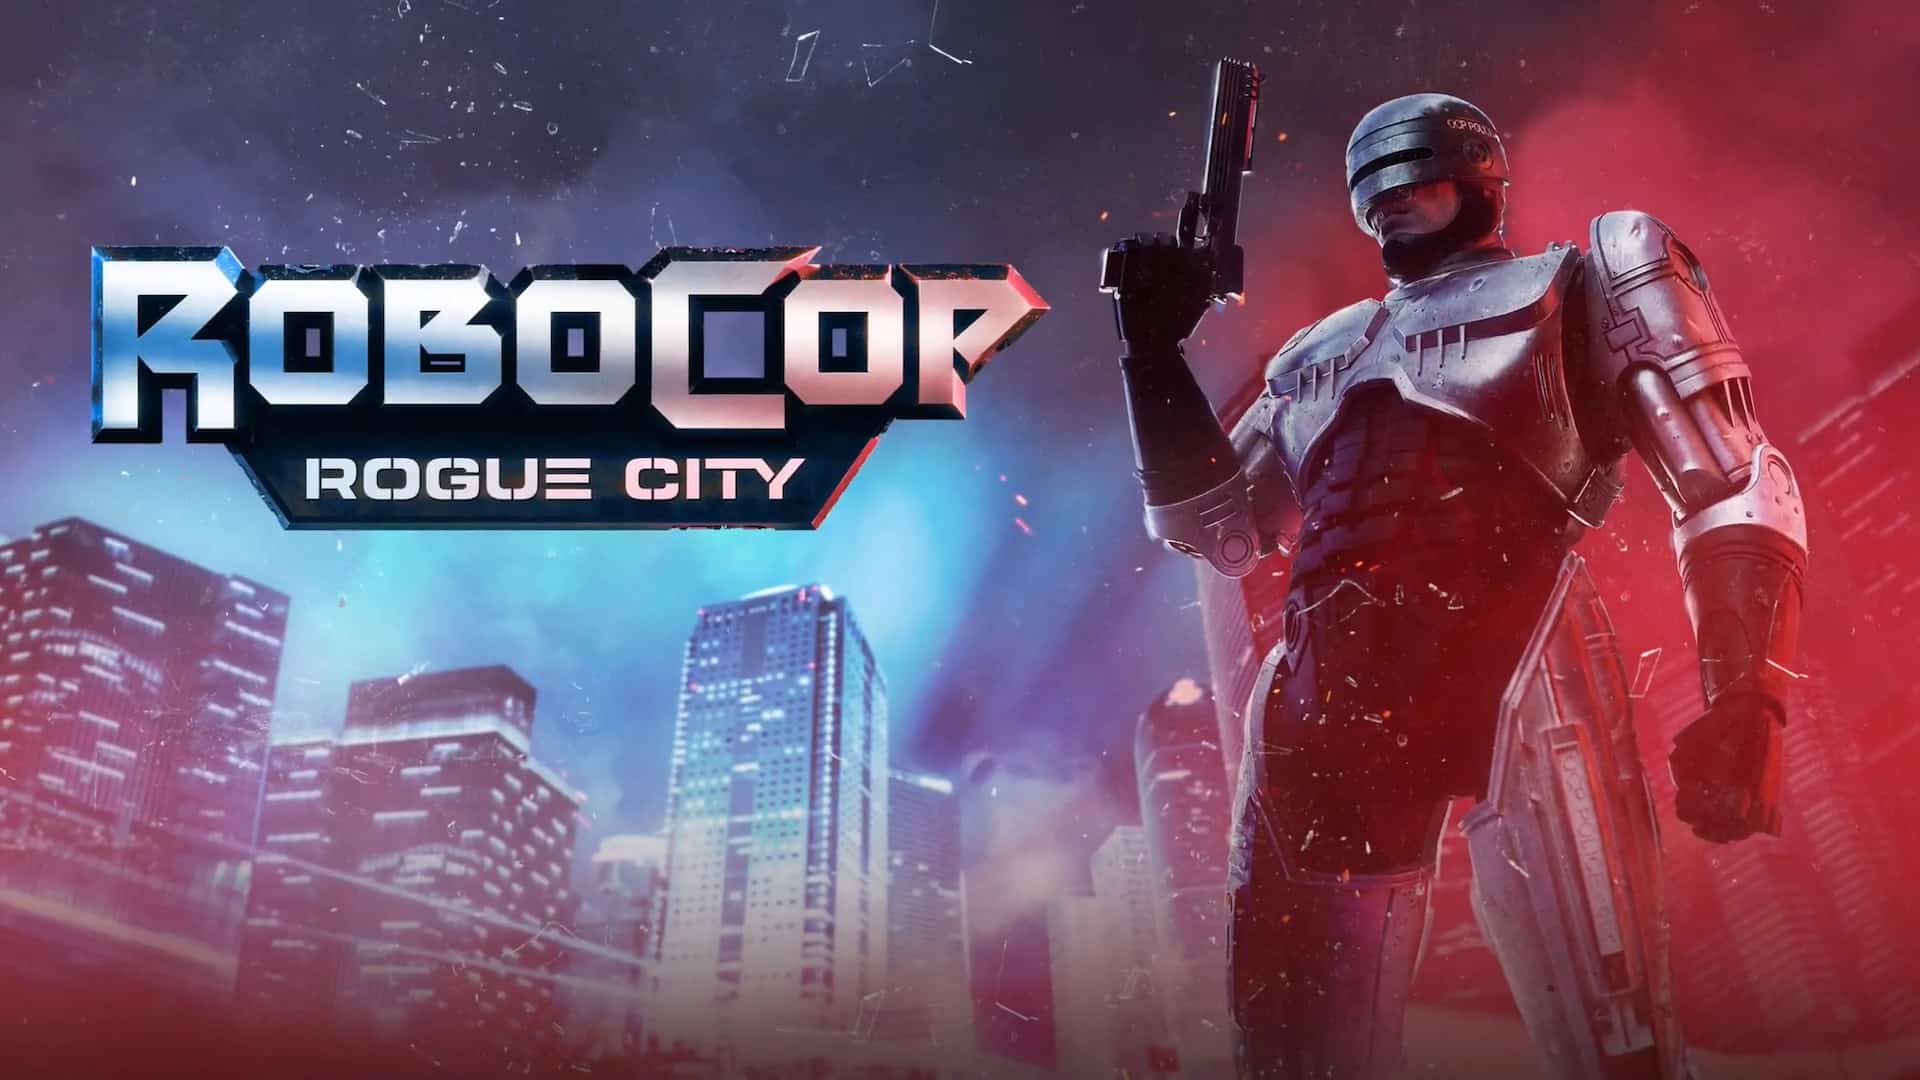 Robocop: Rogue City – Demo já Disponível na Steam!